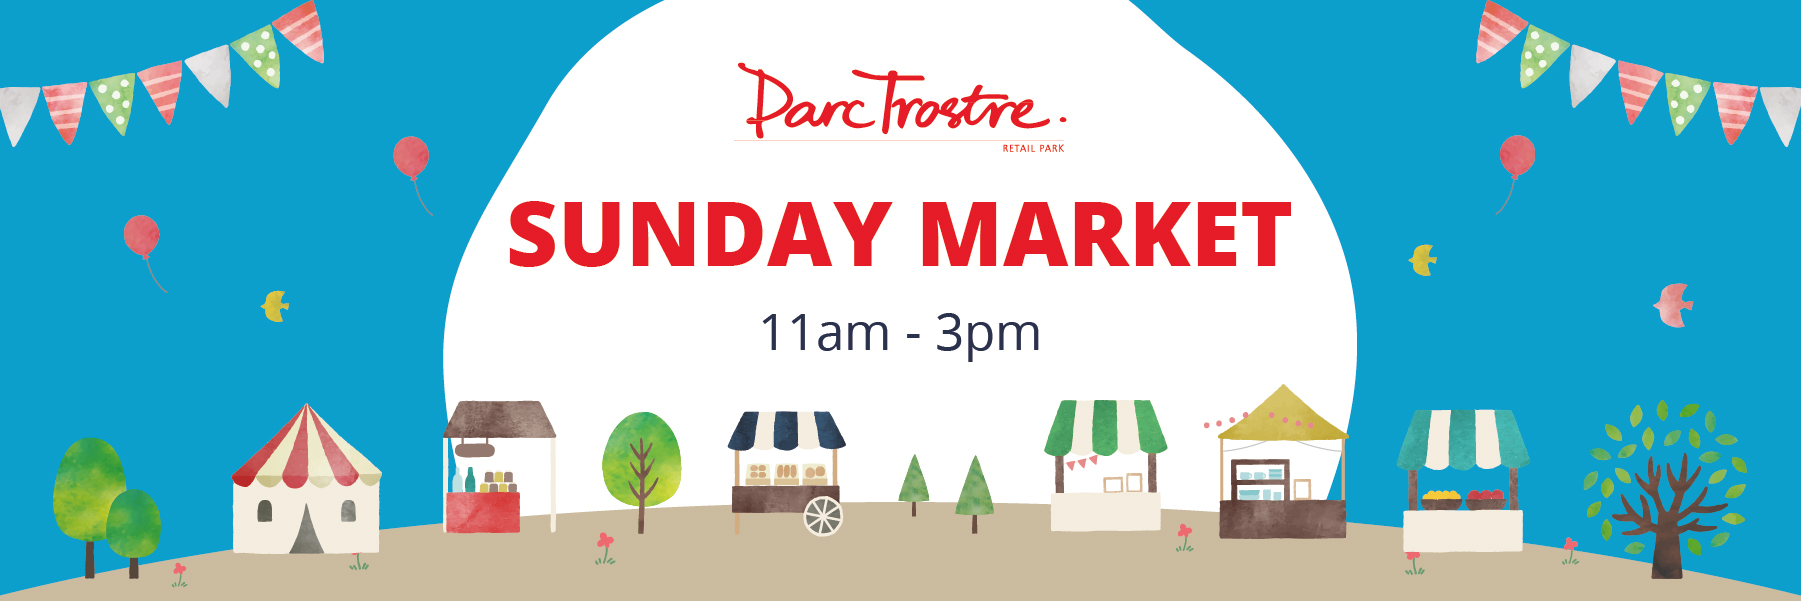 Parc Trostre Sunday Market